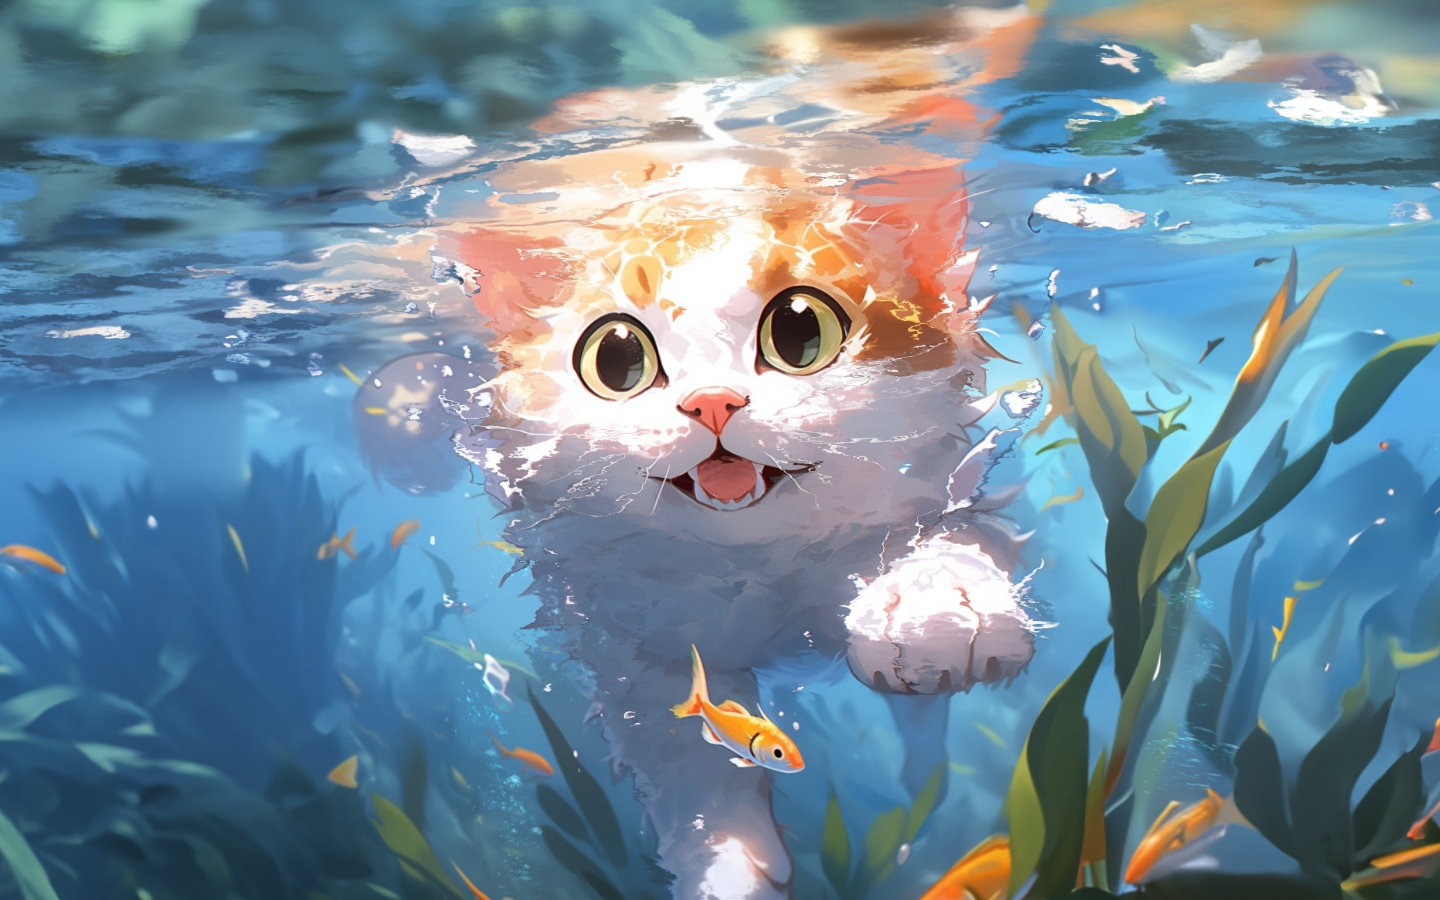 Cute kitten, swim underwater, art, 1440x900 wallpaper